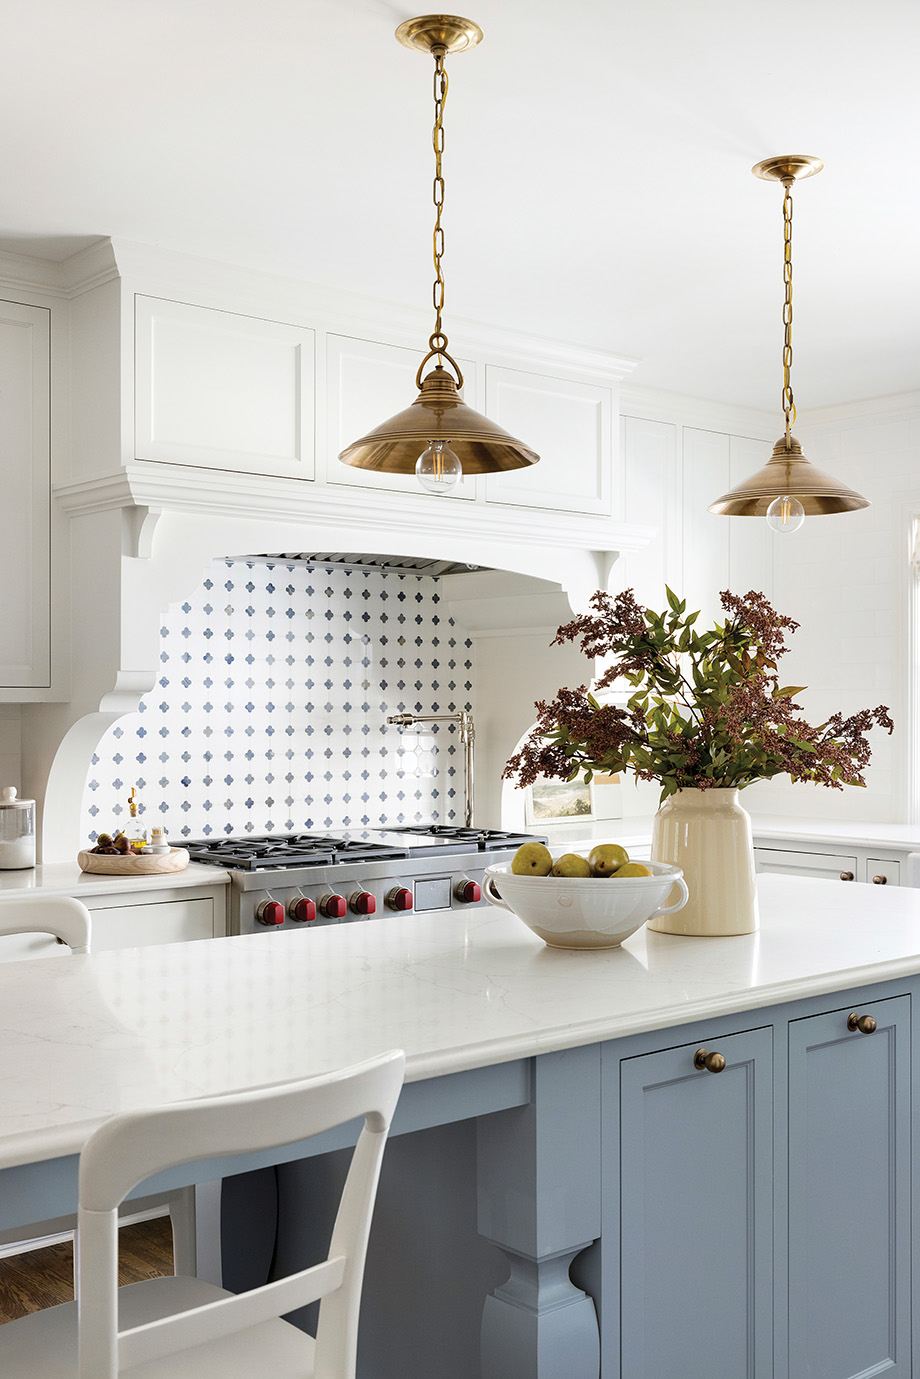 Bria Hammel Interiors Cornflower Blue Kitchen Accents